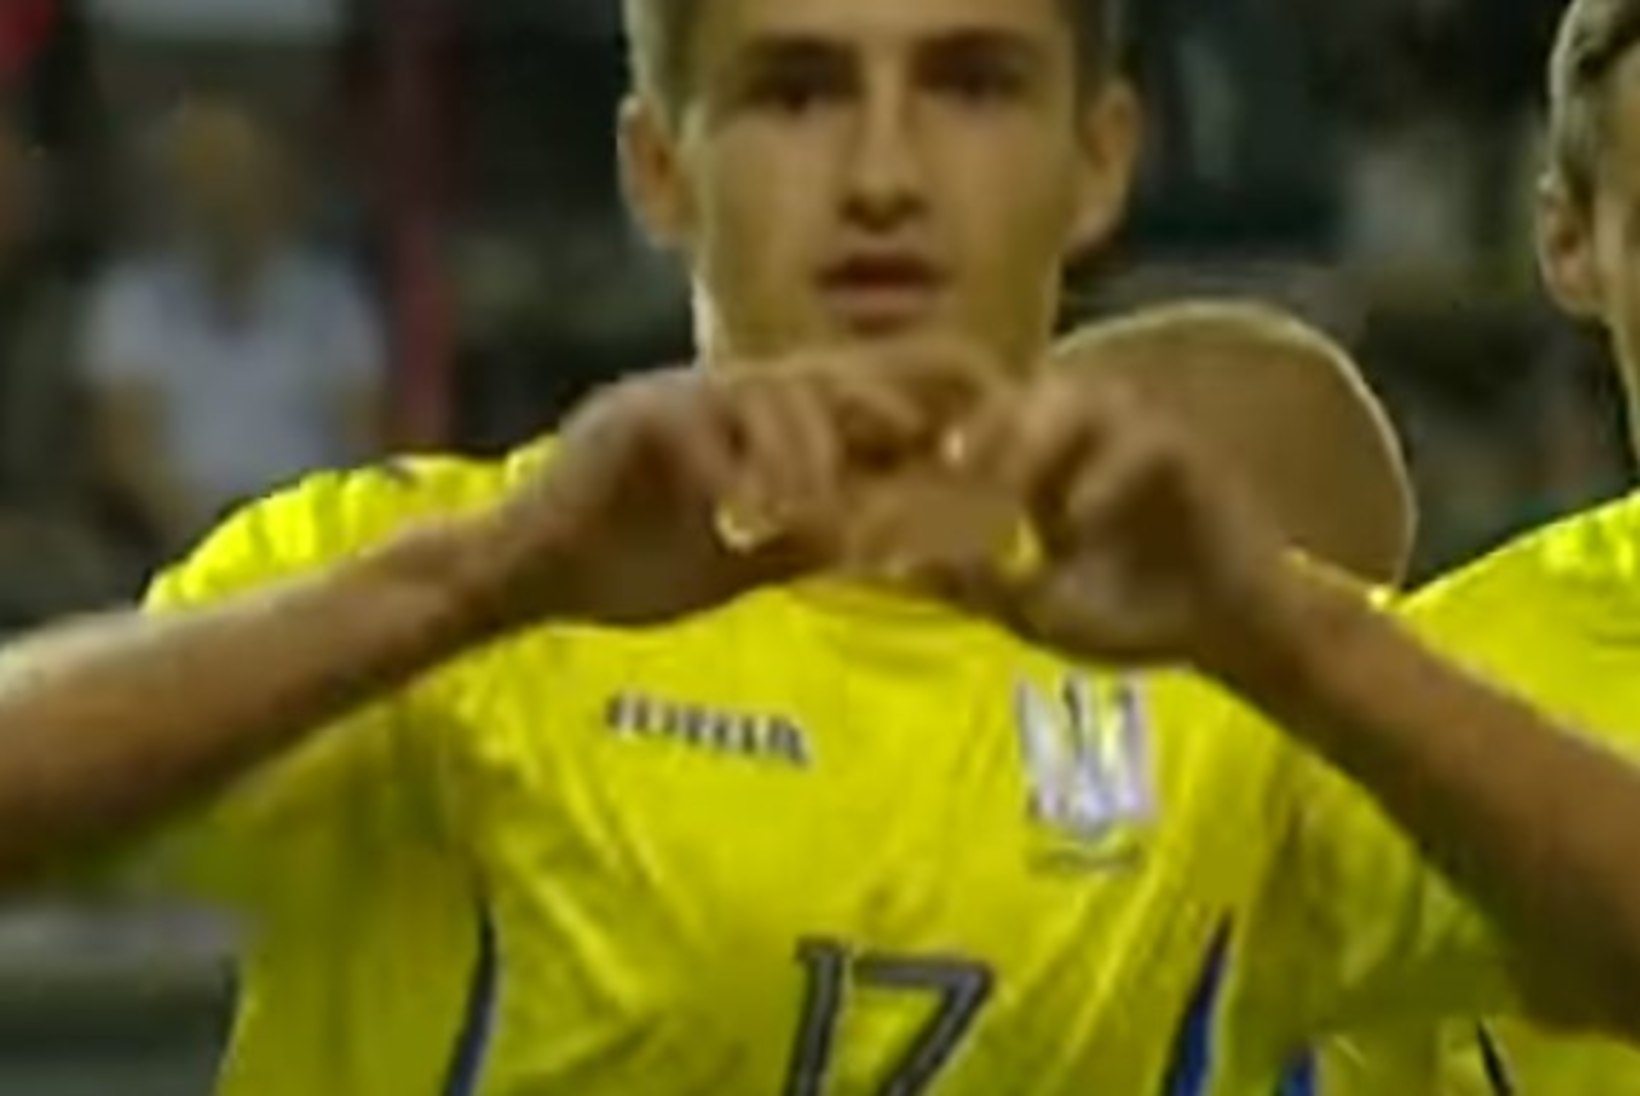 VIDEO | Kas järgmine superstaar? Noor ukrainlane skooris esmalt Ronaldo ja siis Messi stiilis!